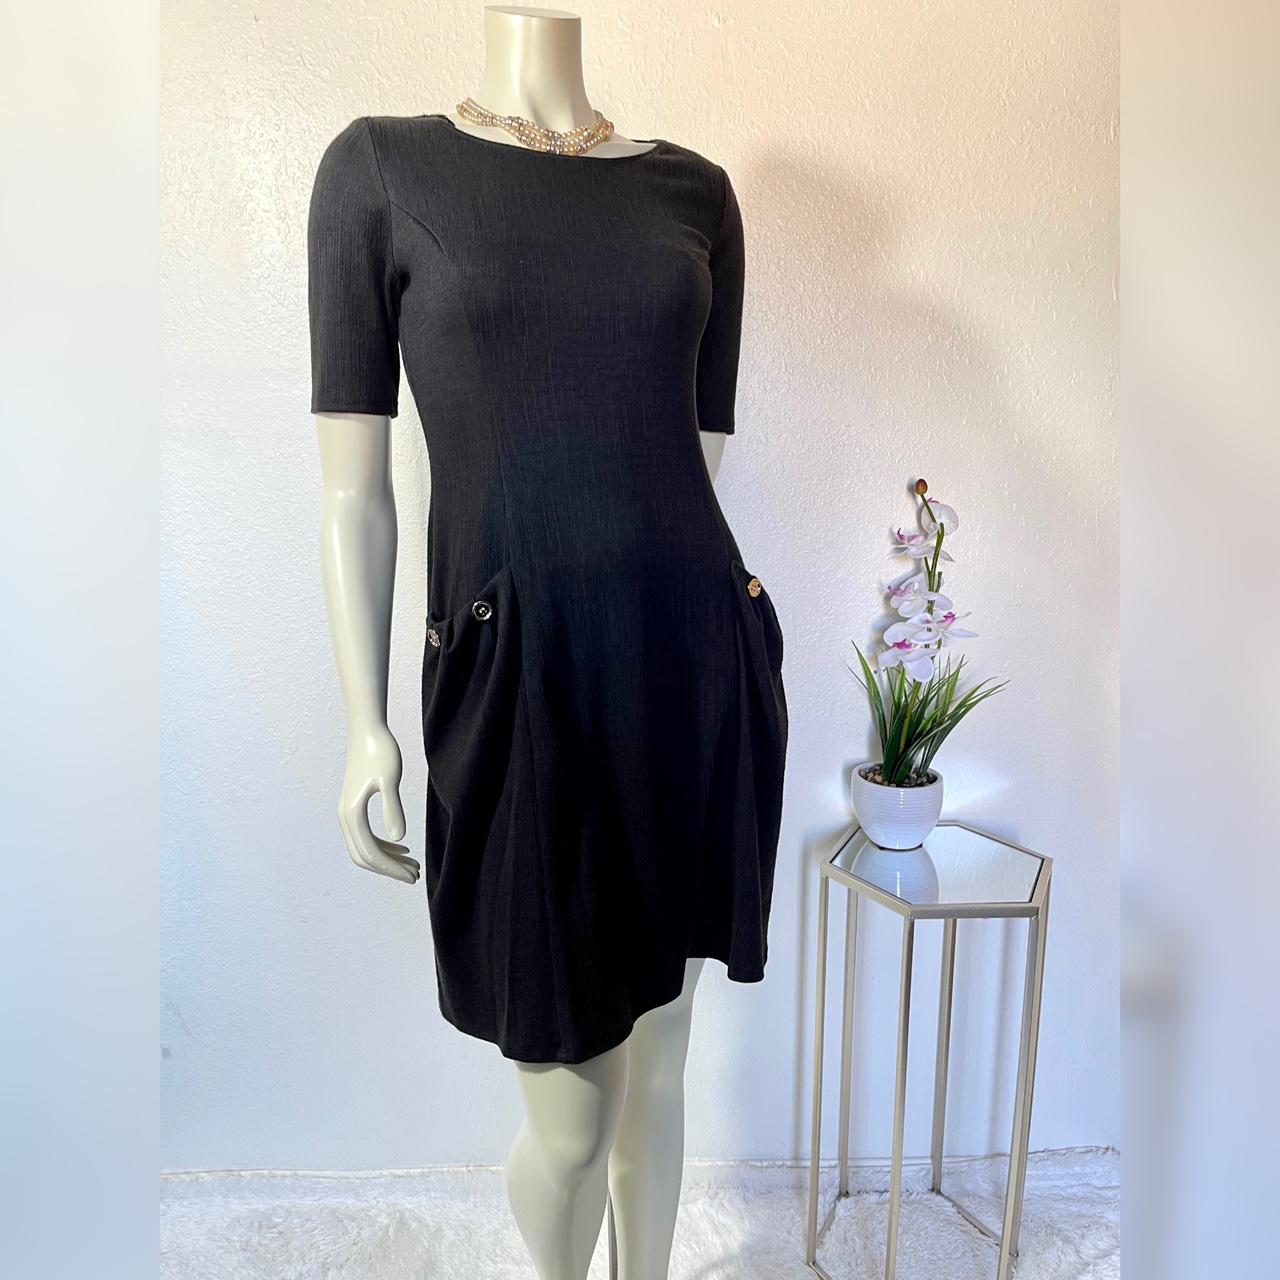 Enfocus Studio Women's Black Dress | Depop